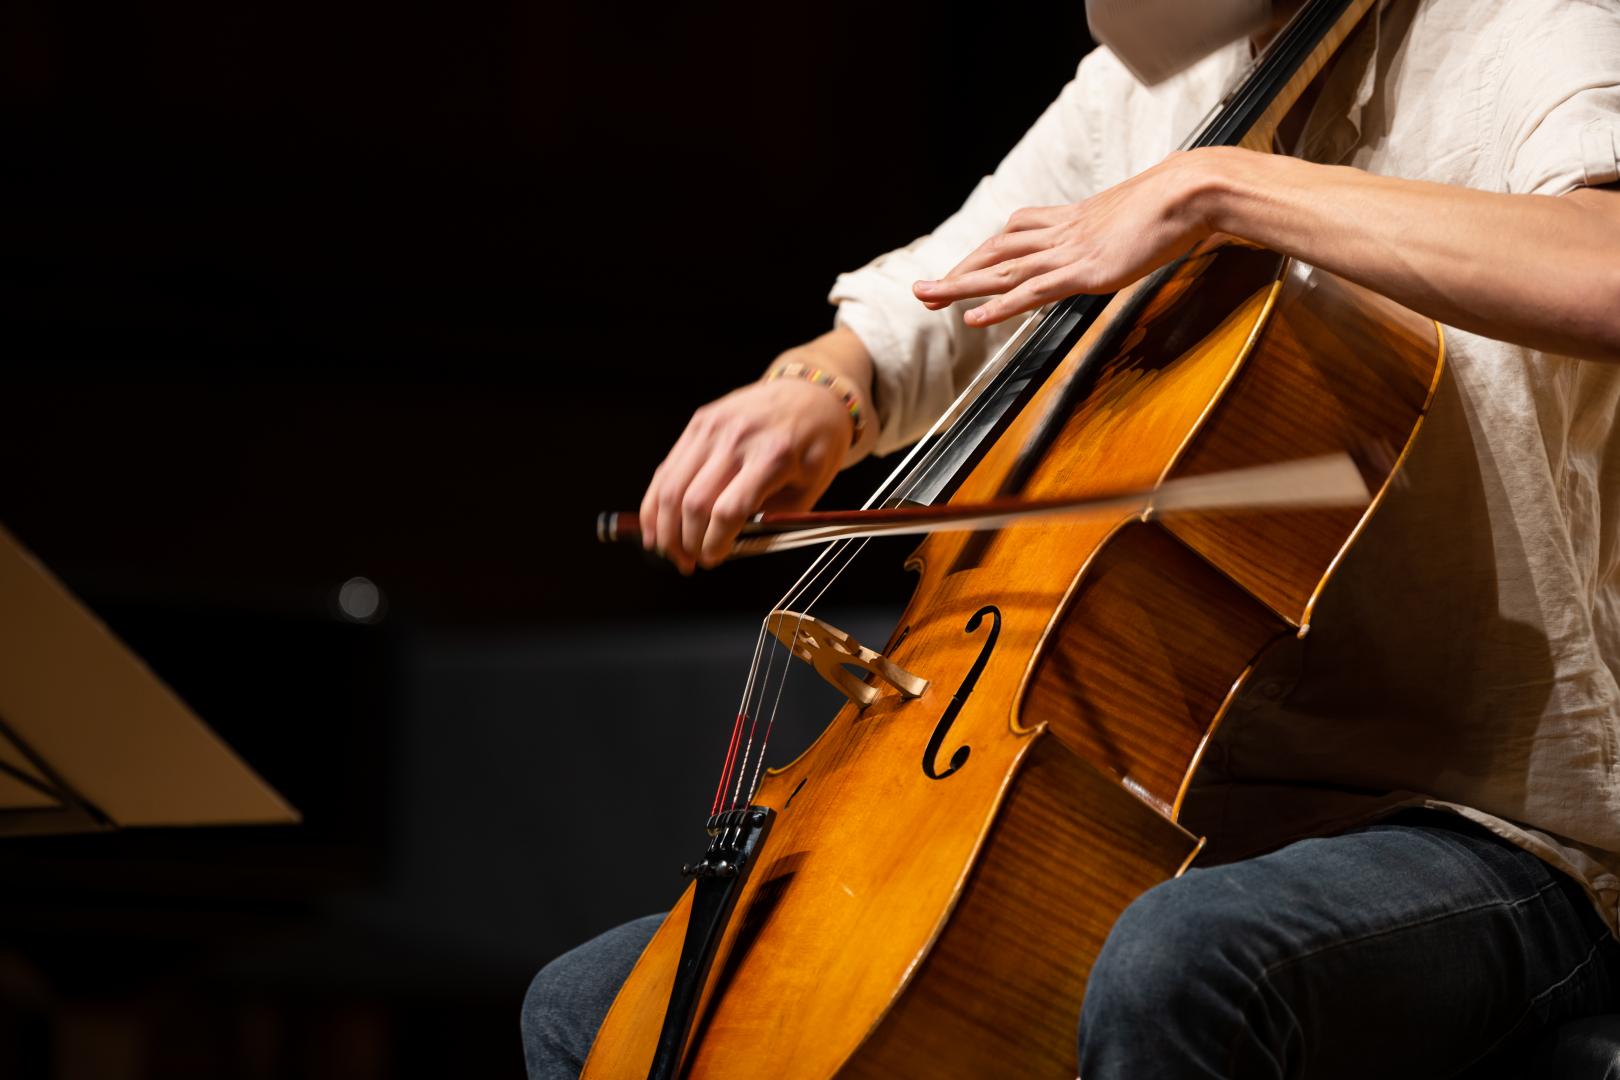 Ein Cellist spielt sein Instrument, die schnelle Bewegung des Bogens ist im Bild zu sehen